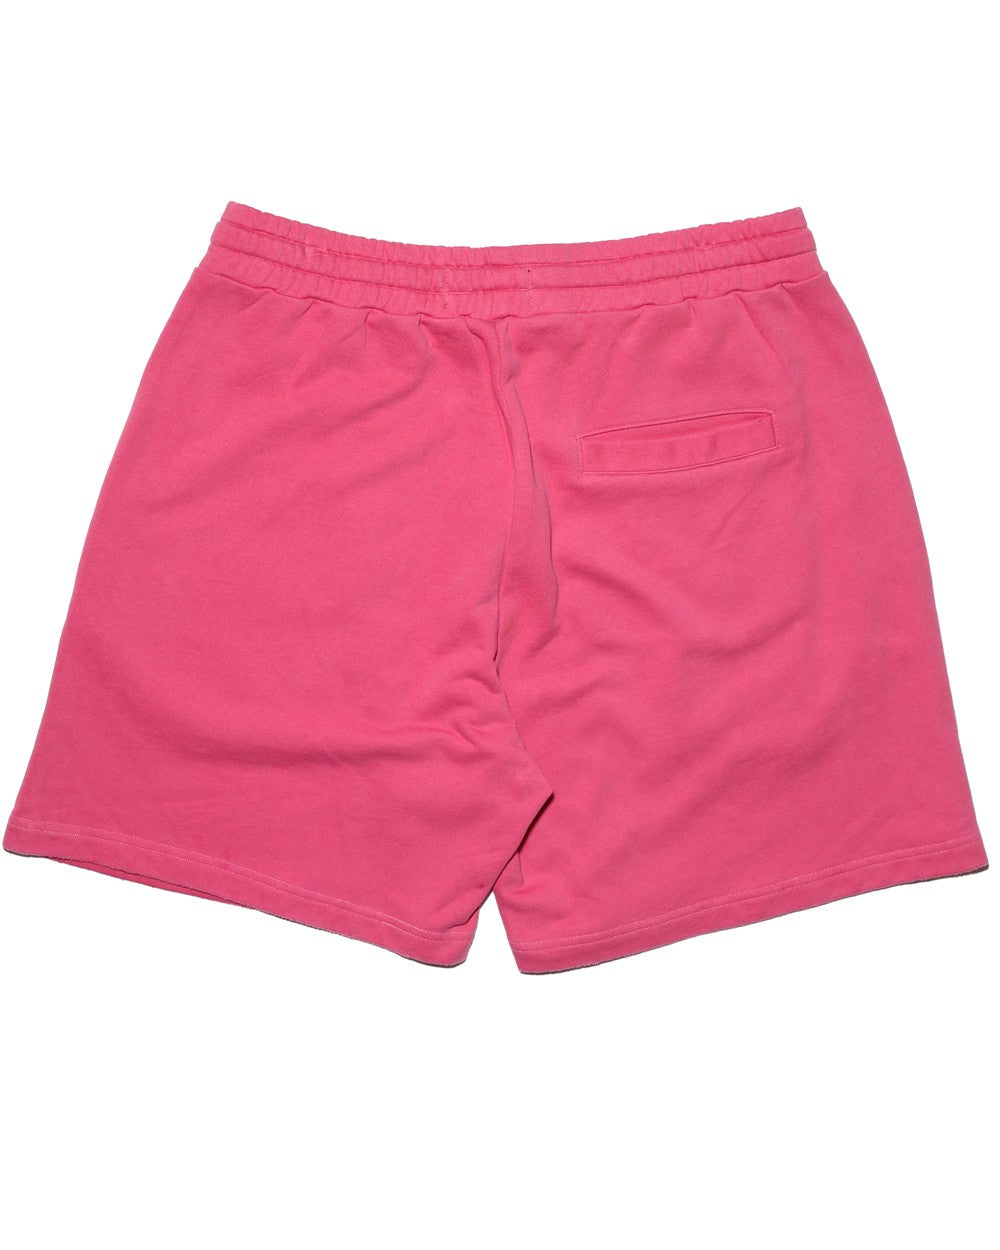 Hot Pink Take Me Somewhere Nice Shorts